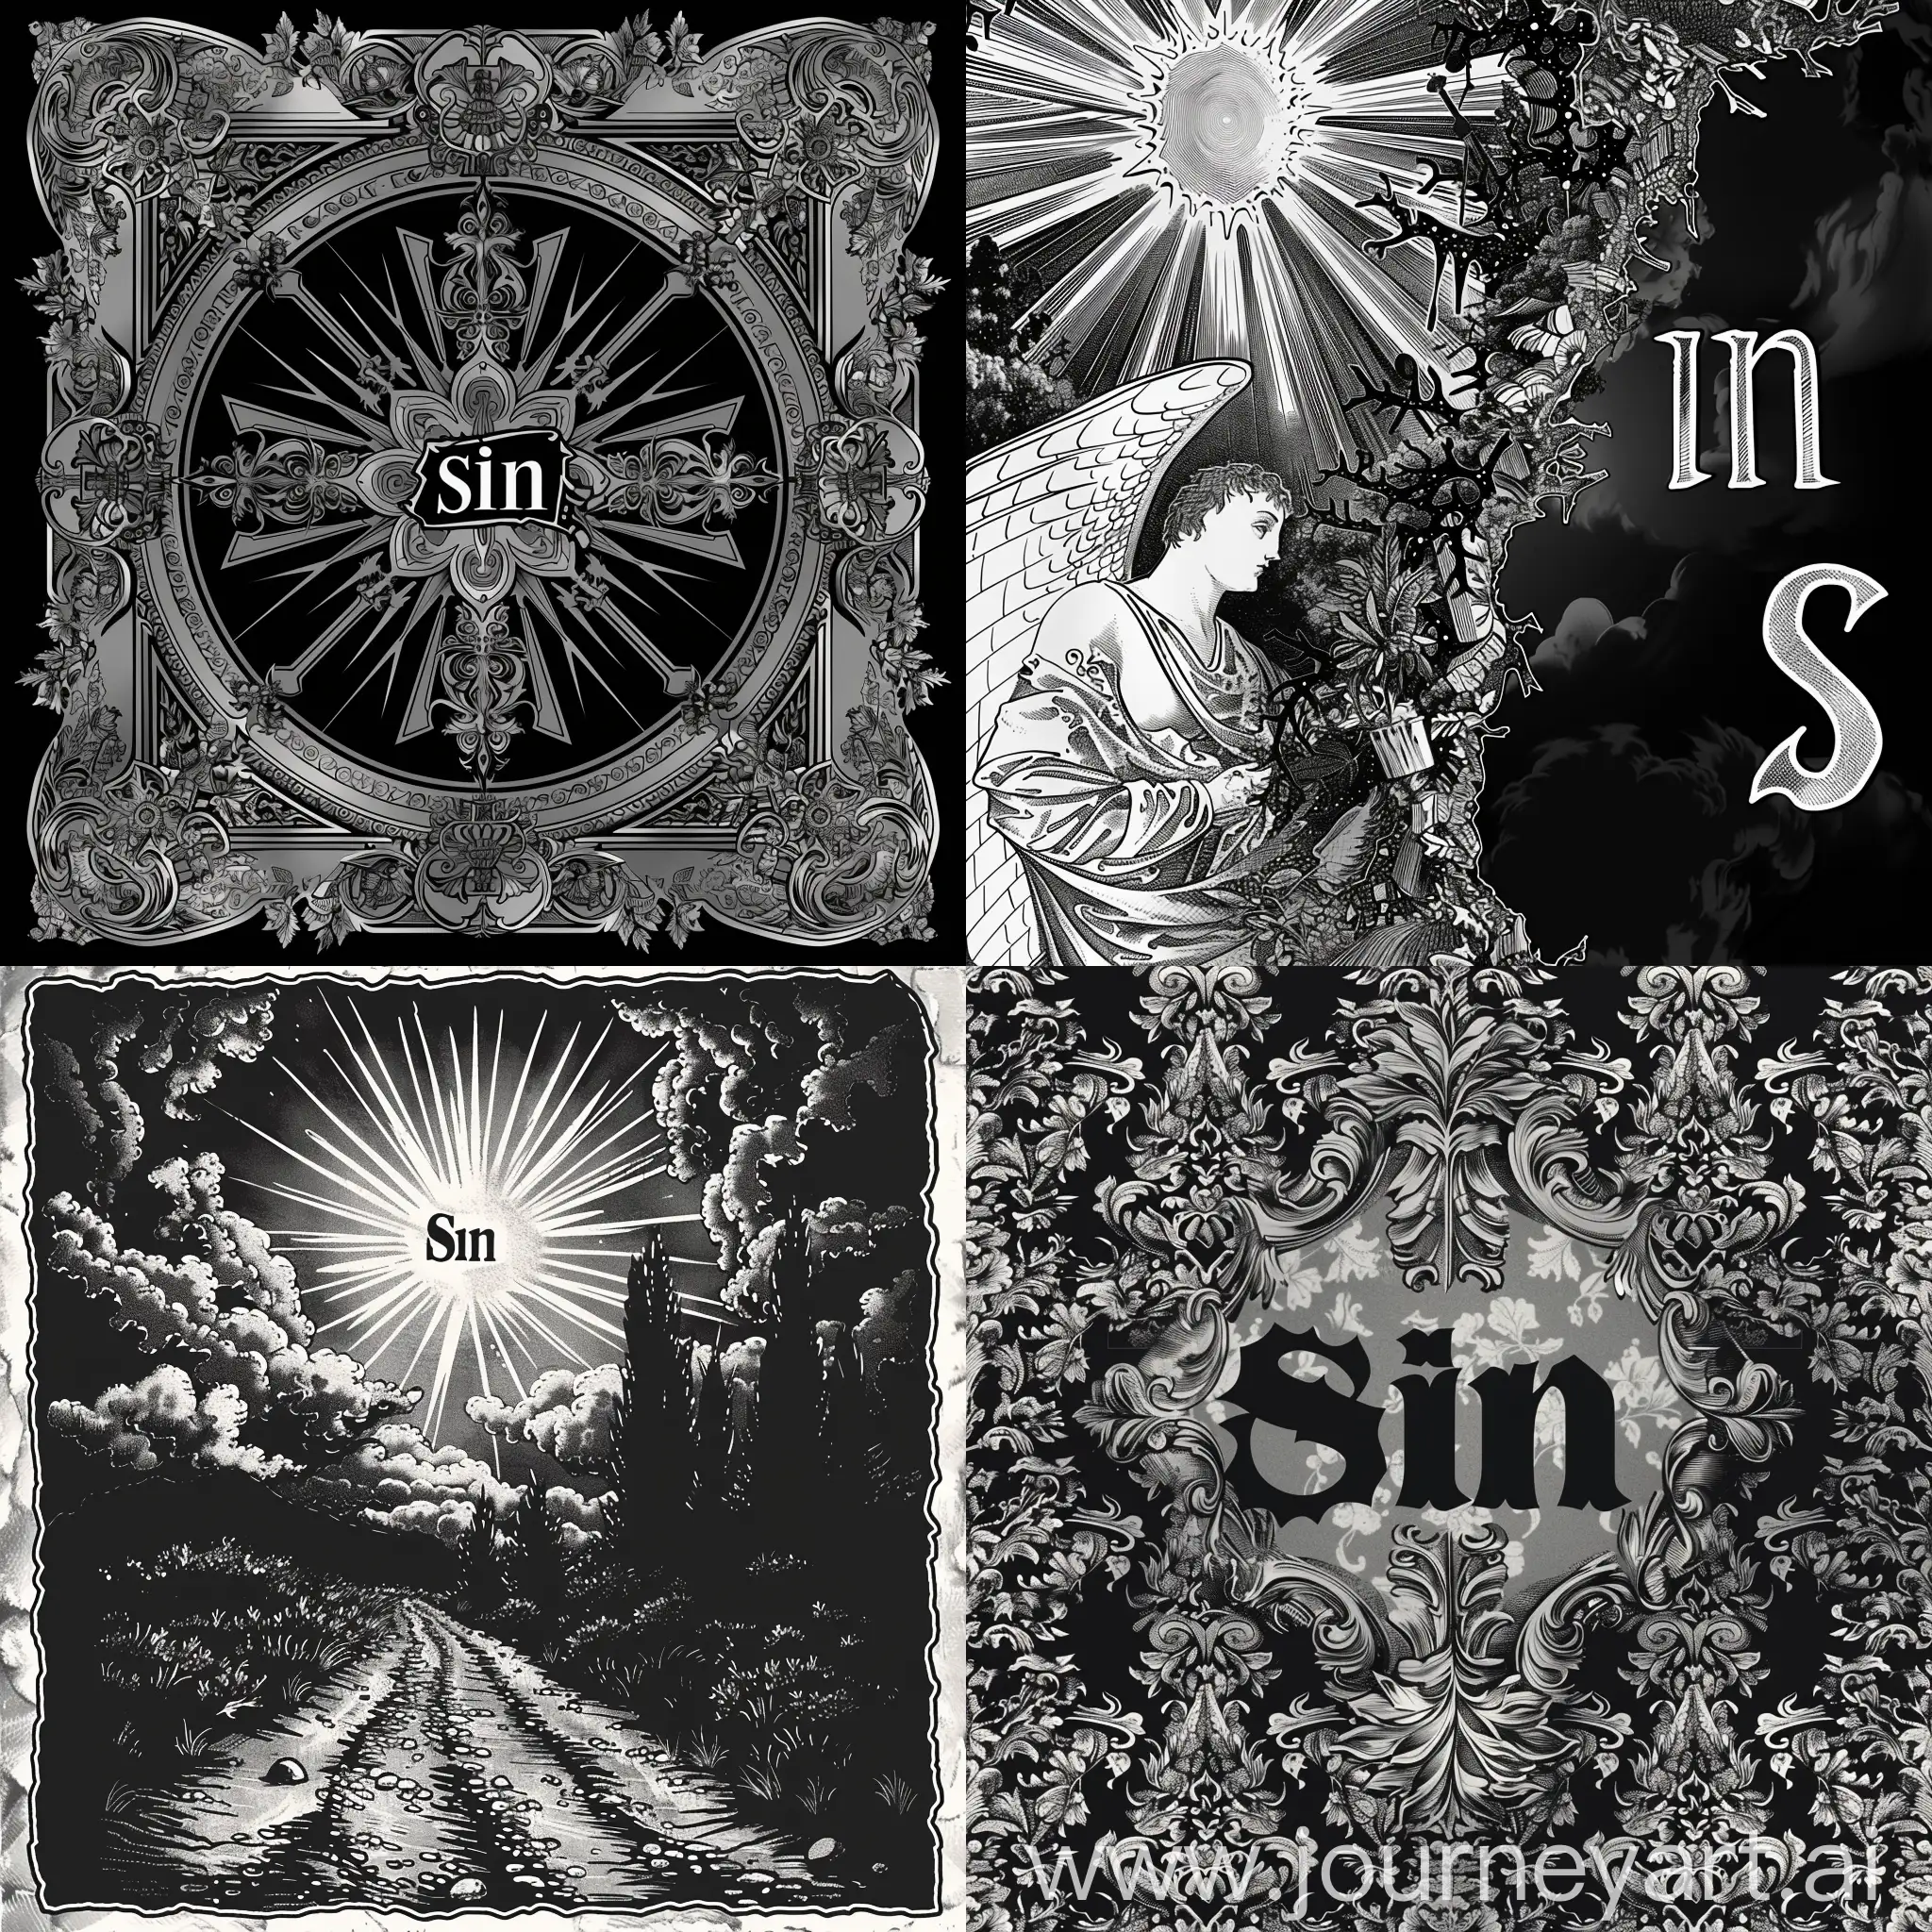 Сгенирируй картинку для начала главы, в реалигиозном формате, черно белую с надписью грех